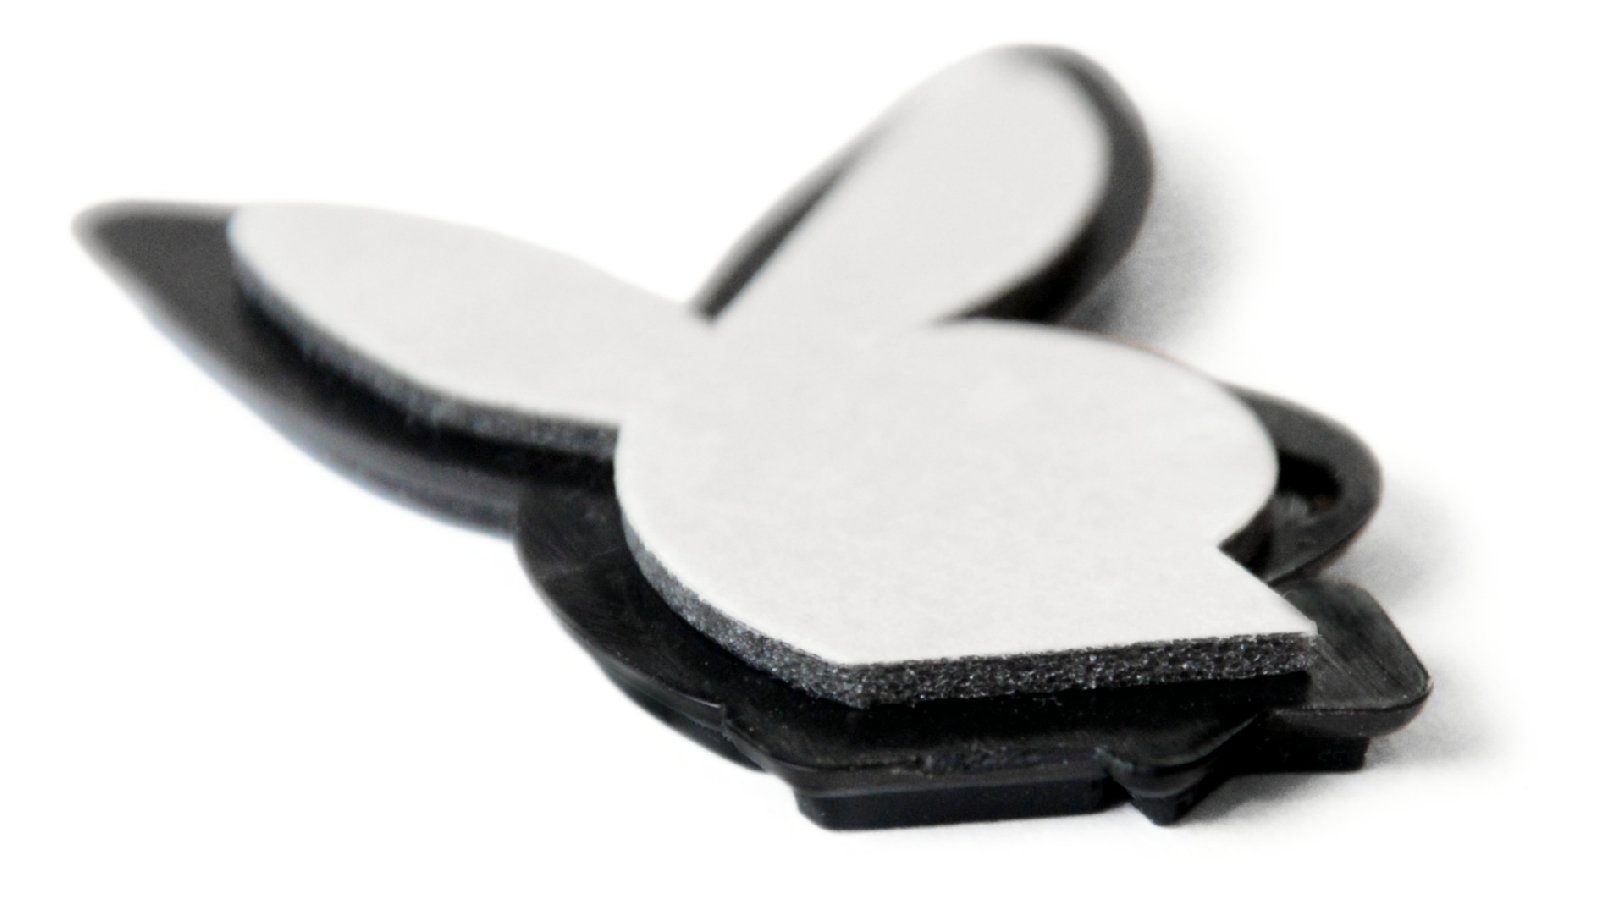 PLAYBOY Schwarzer Autocomfort Relief HR BUNNY BLACK Häschen Emblem Set Schlüsselanhänger Schlüsselanhänger